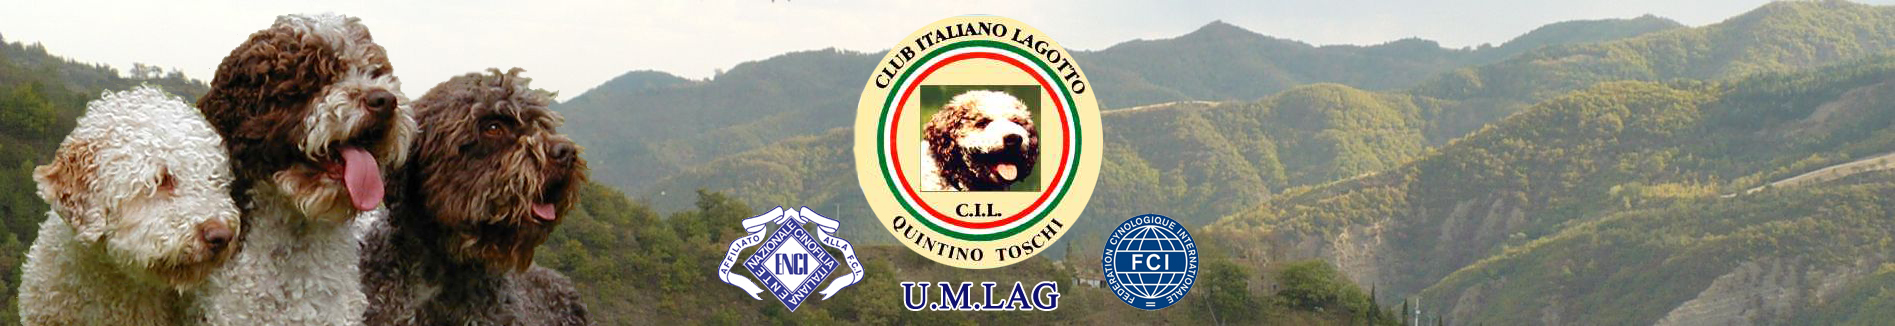 Club Italiano Lagotto